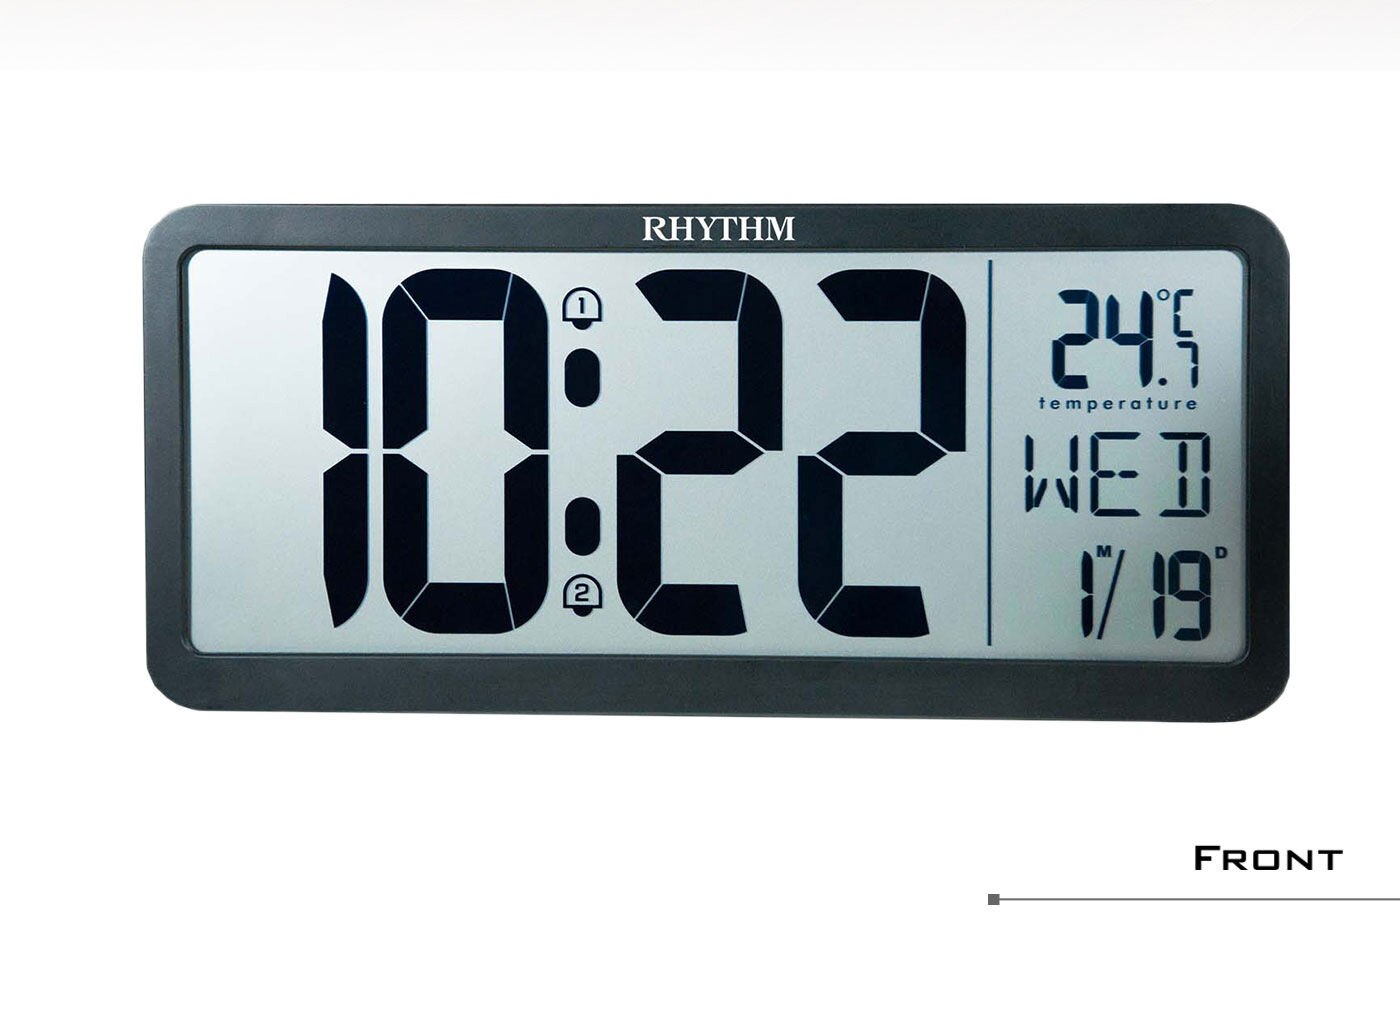 麗聲鐘溫度日曆電子鐘，液晶顯示時間、日期、星期、溫度，12/24小時切換，華氏／攝氏溫度切換，座掛兩用鐘。